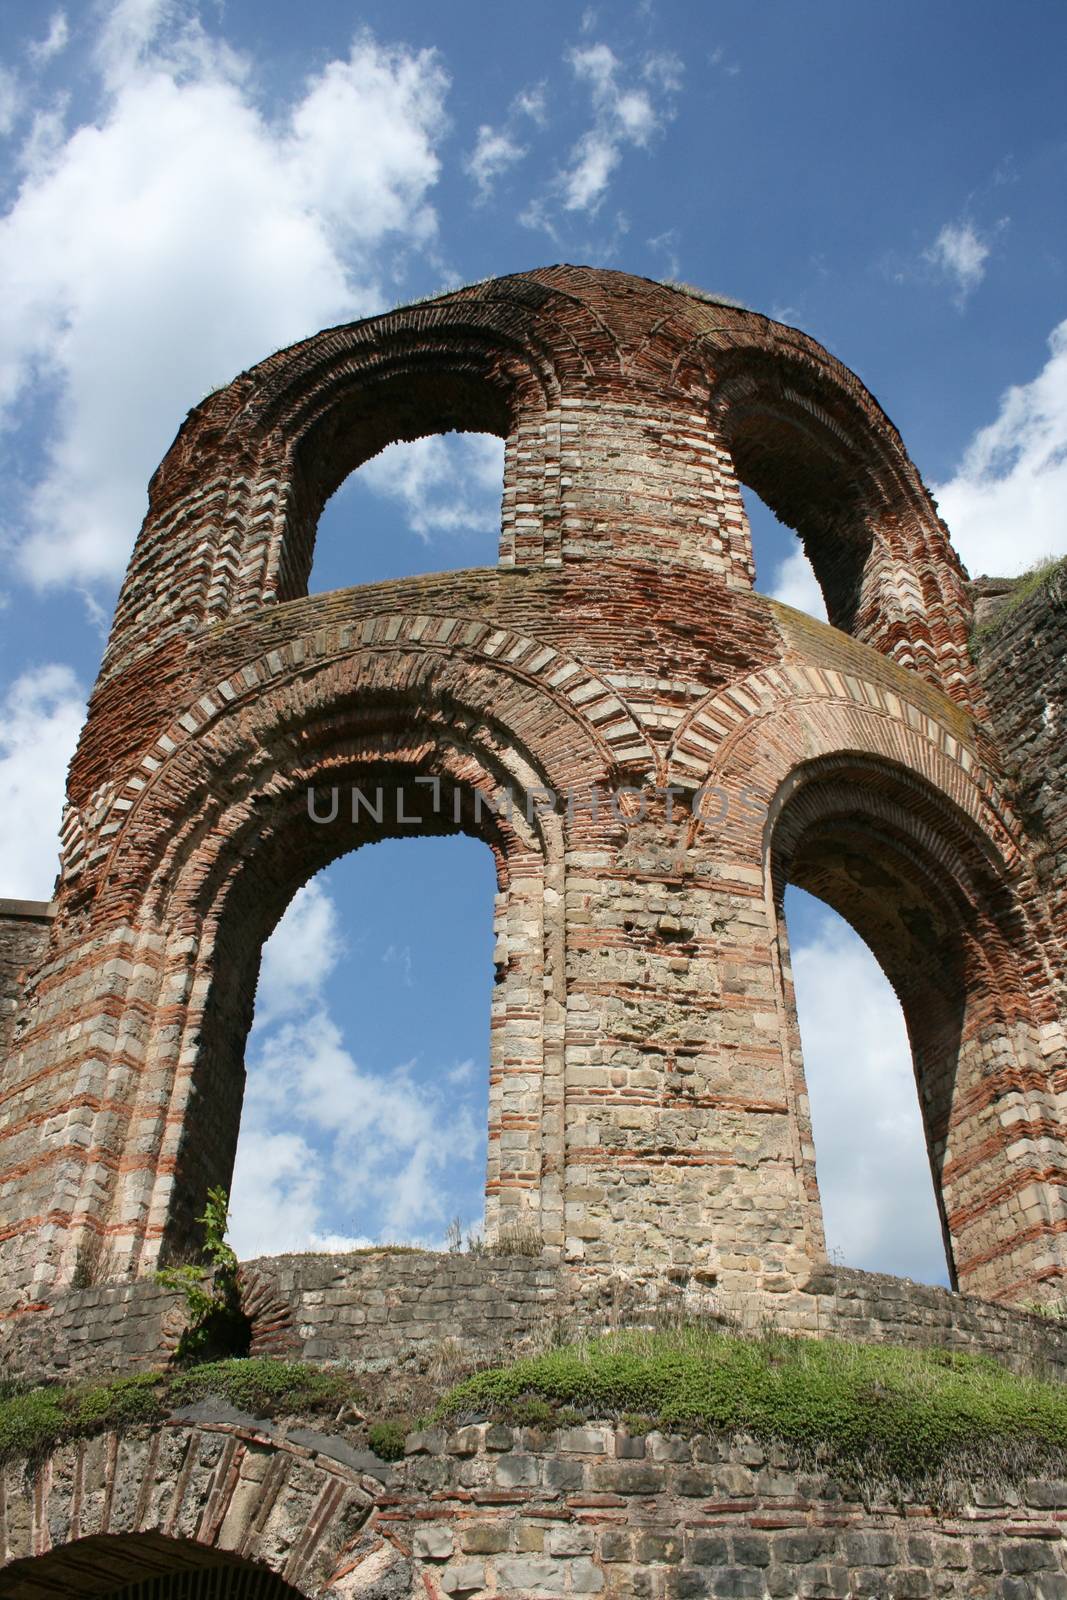 Ruins of a tower from Roman times in Trier, Germany  Ruine eines Turmes aus r�mischer Zeit in Trier,Deutschland